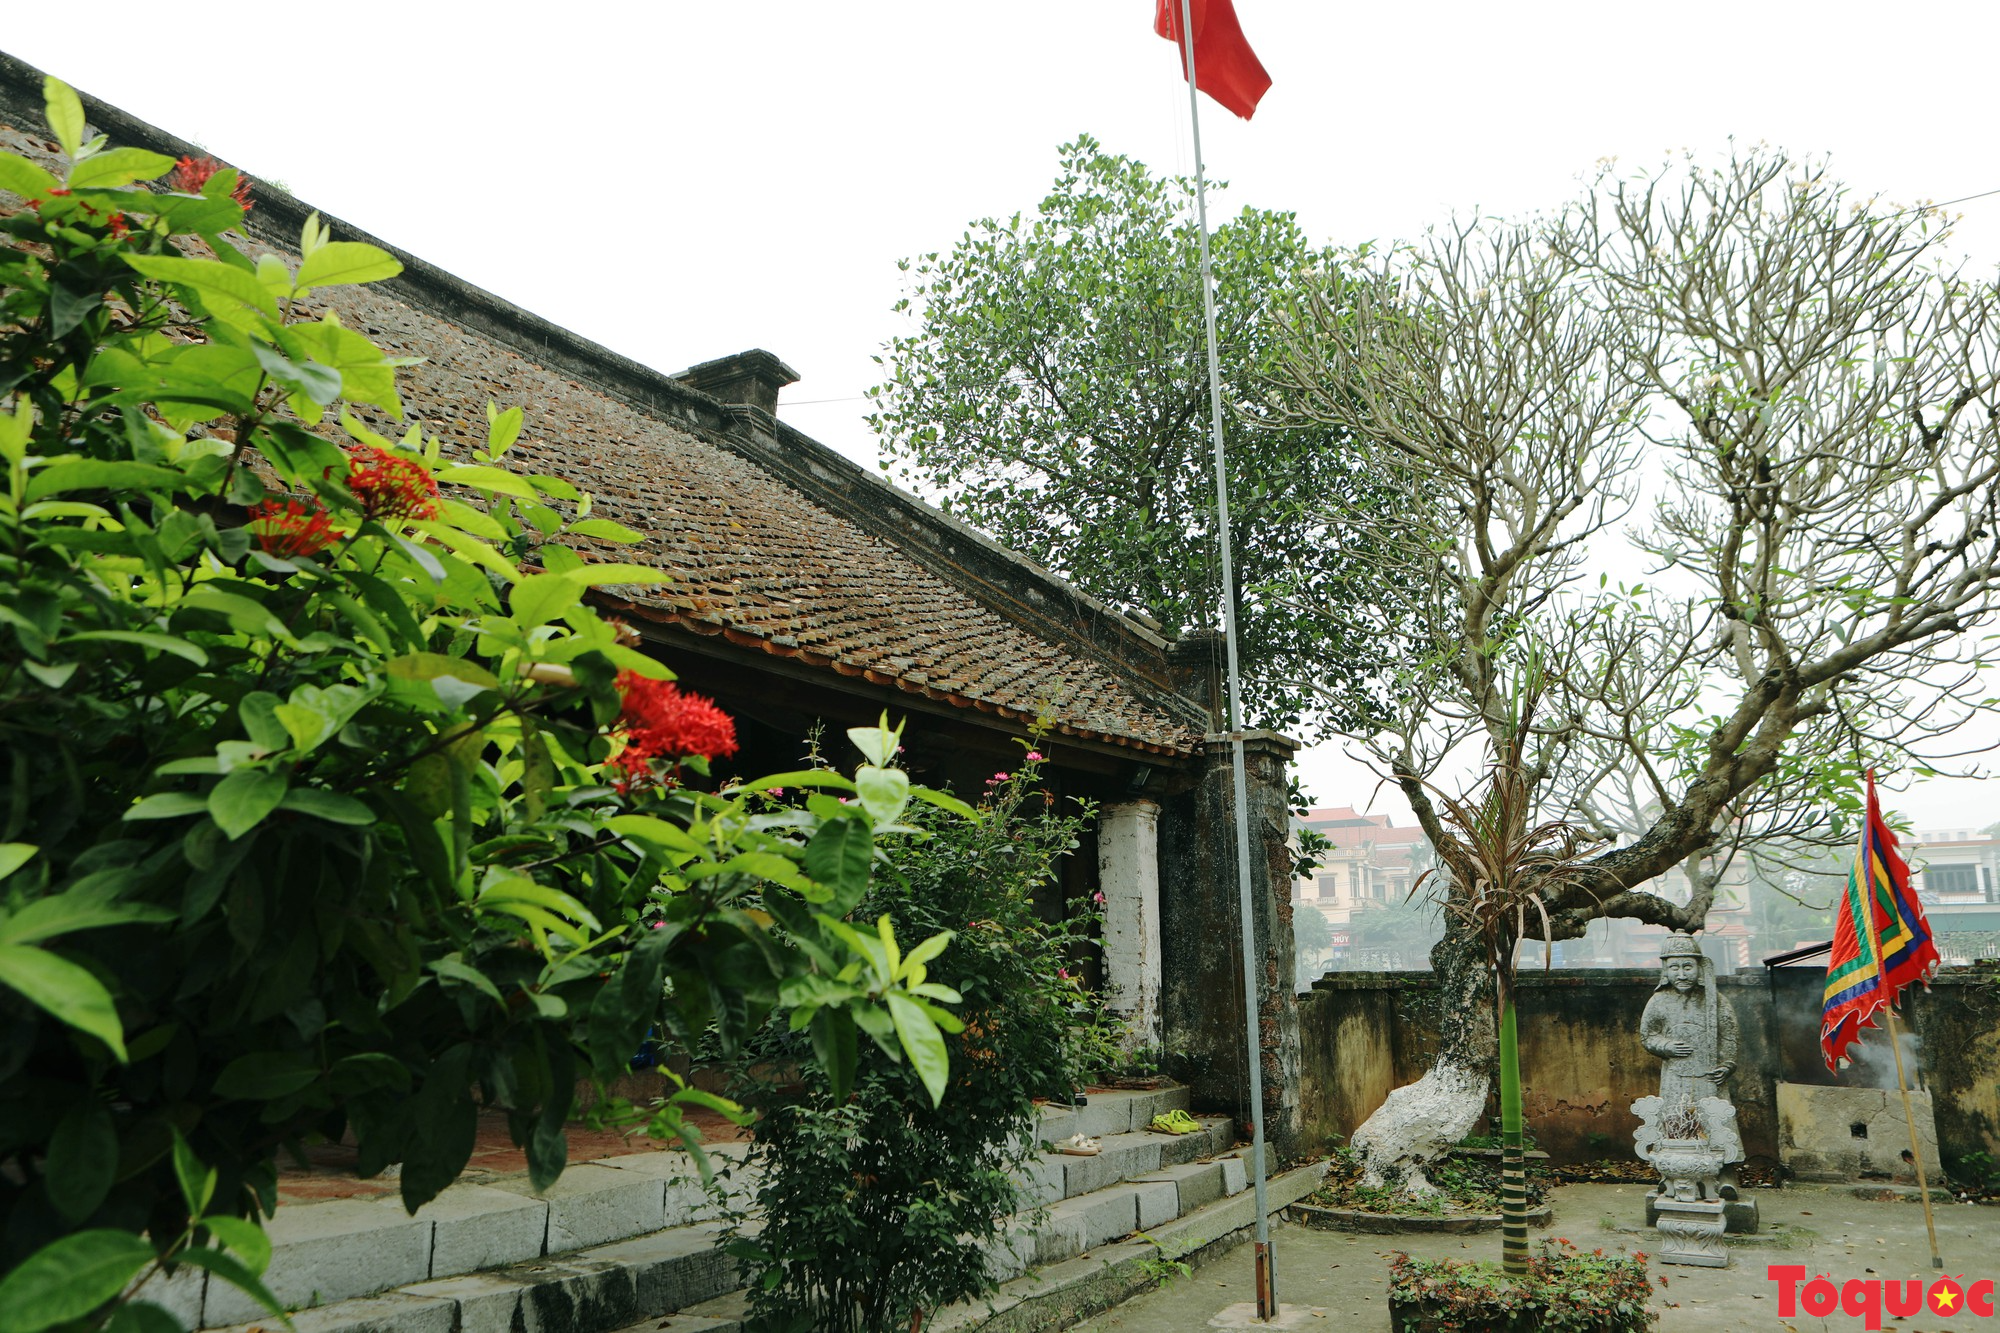 Đền đá Phú Đa kiến trúc độc đáo, đậm chất văn hóa Việt cổ - Ảnh 3.